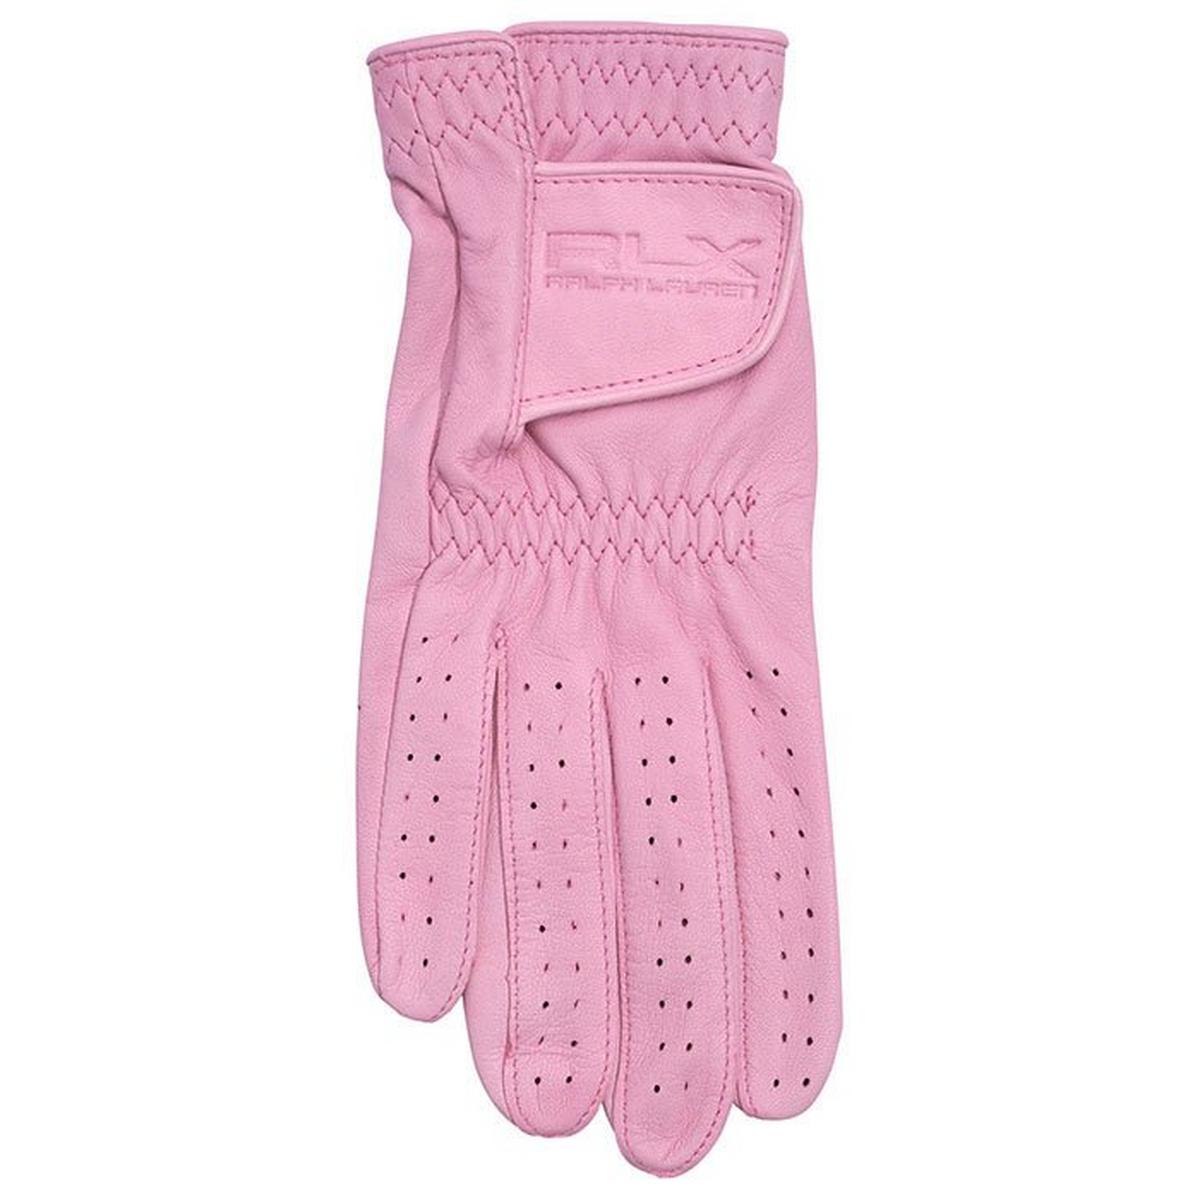 Women's Cabretta Leather Golf Glove (Right)